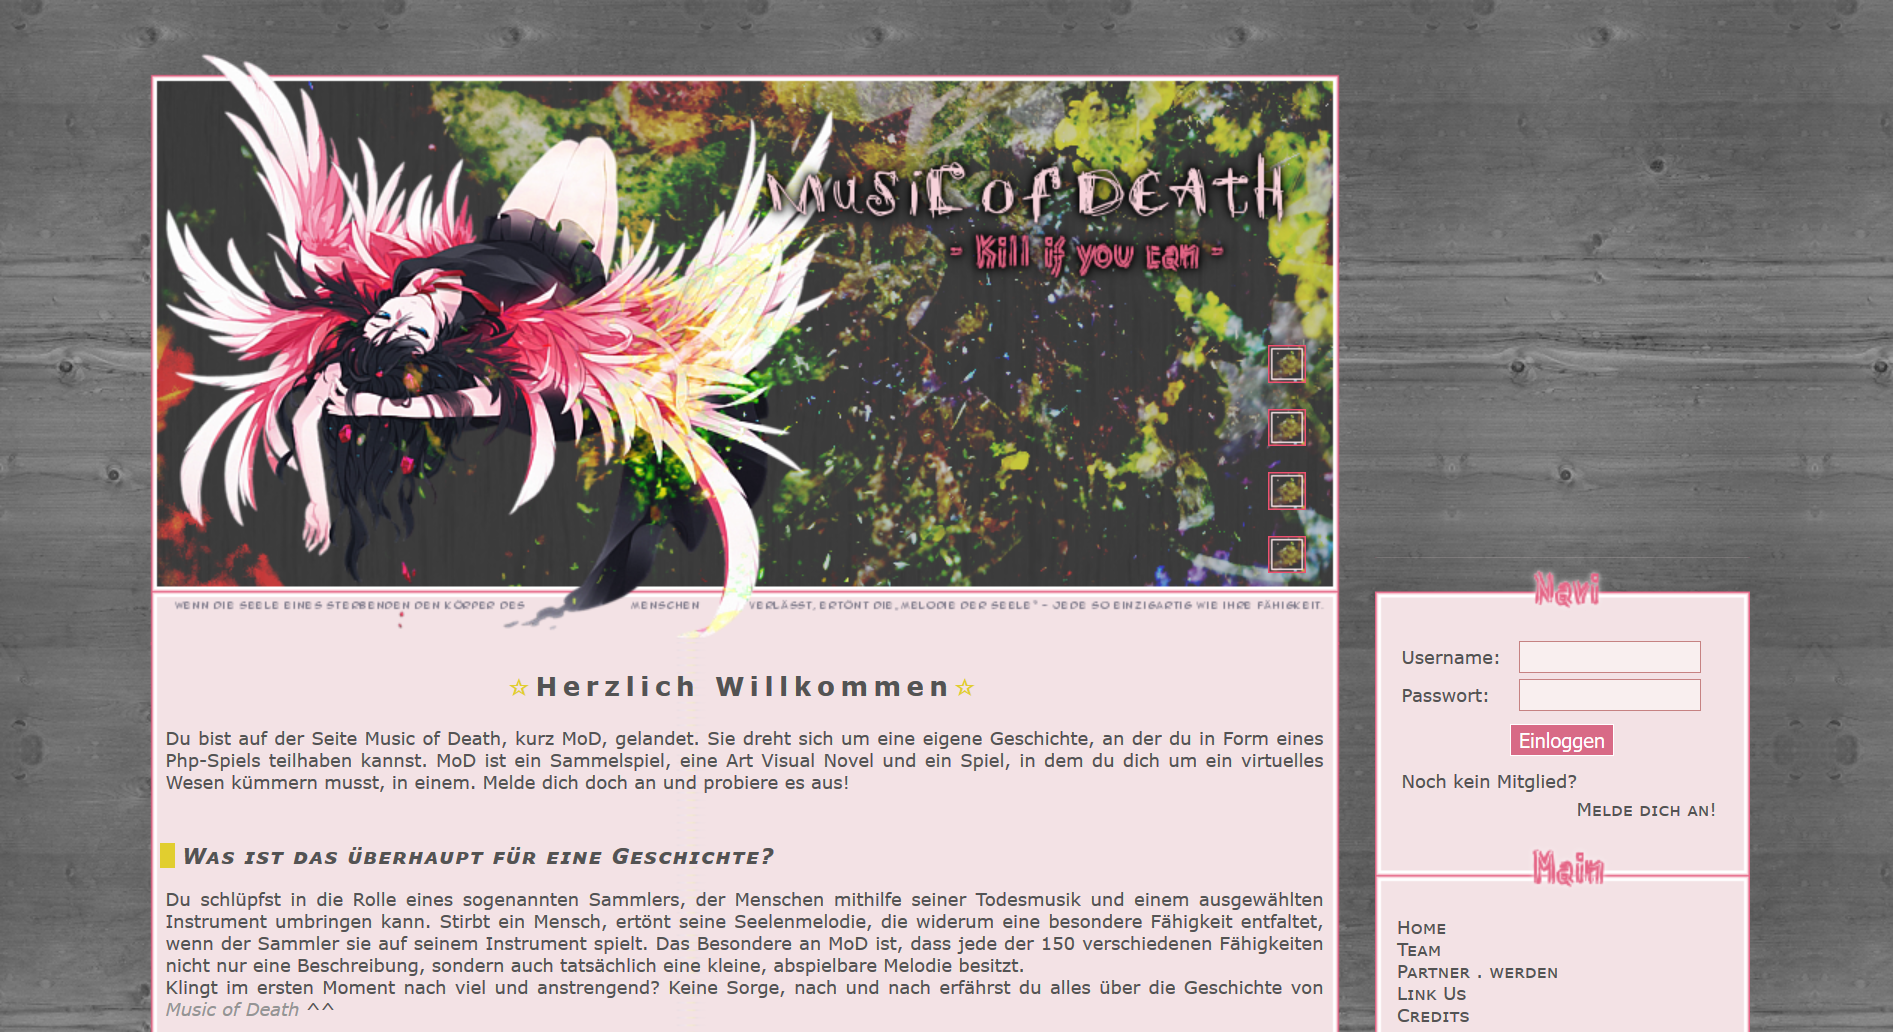 Screenshot der neuen Website, die der jetzigen sehr ähnlich sieht. Auf dem Header steht noch "Music of Death".